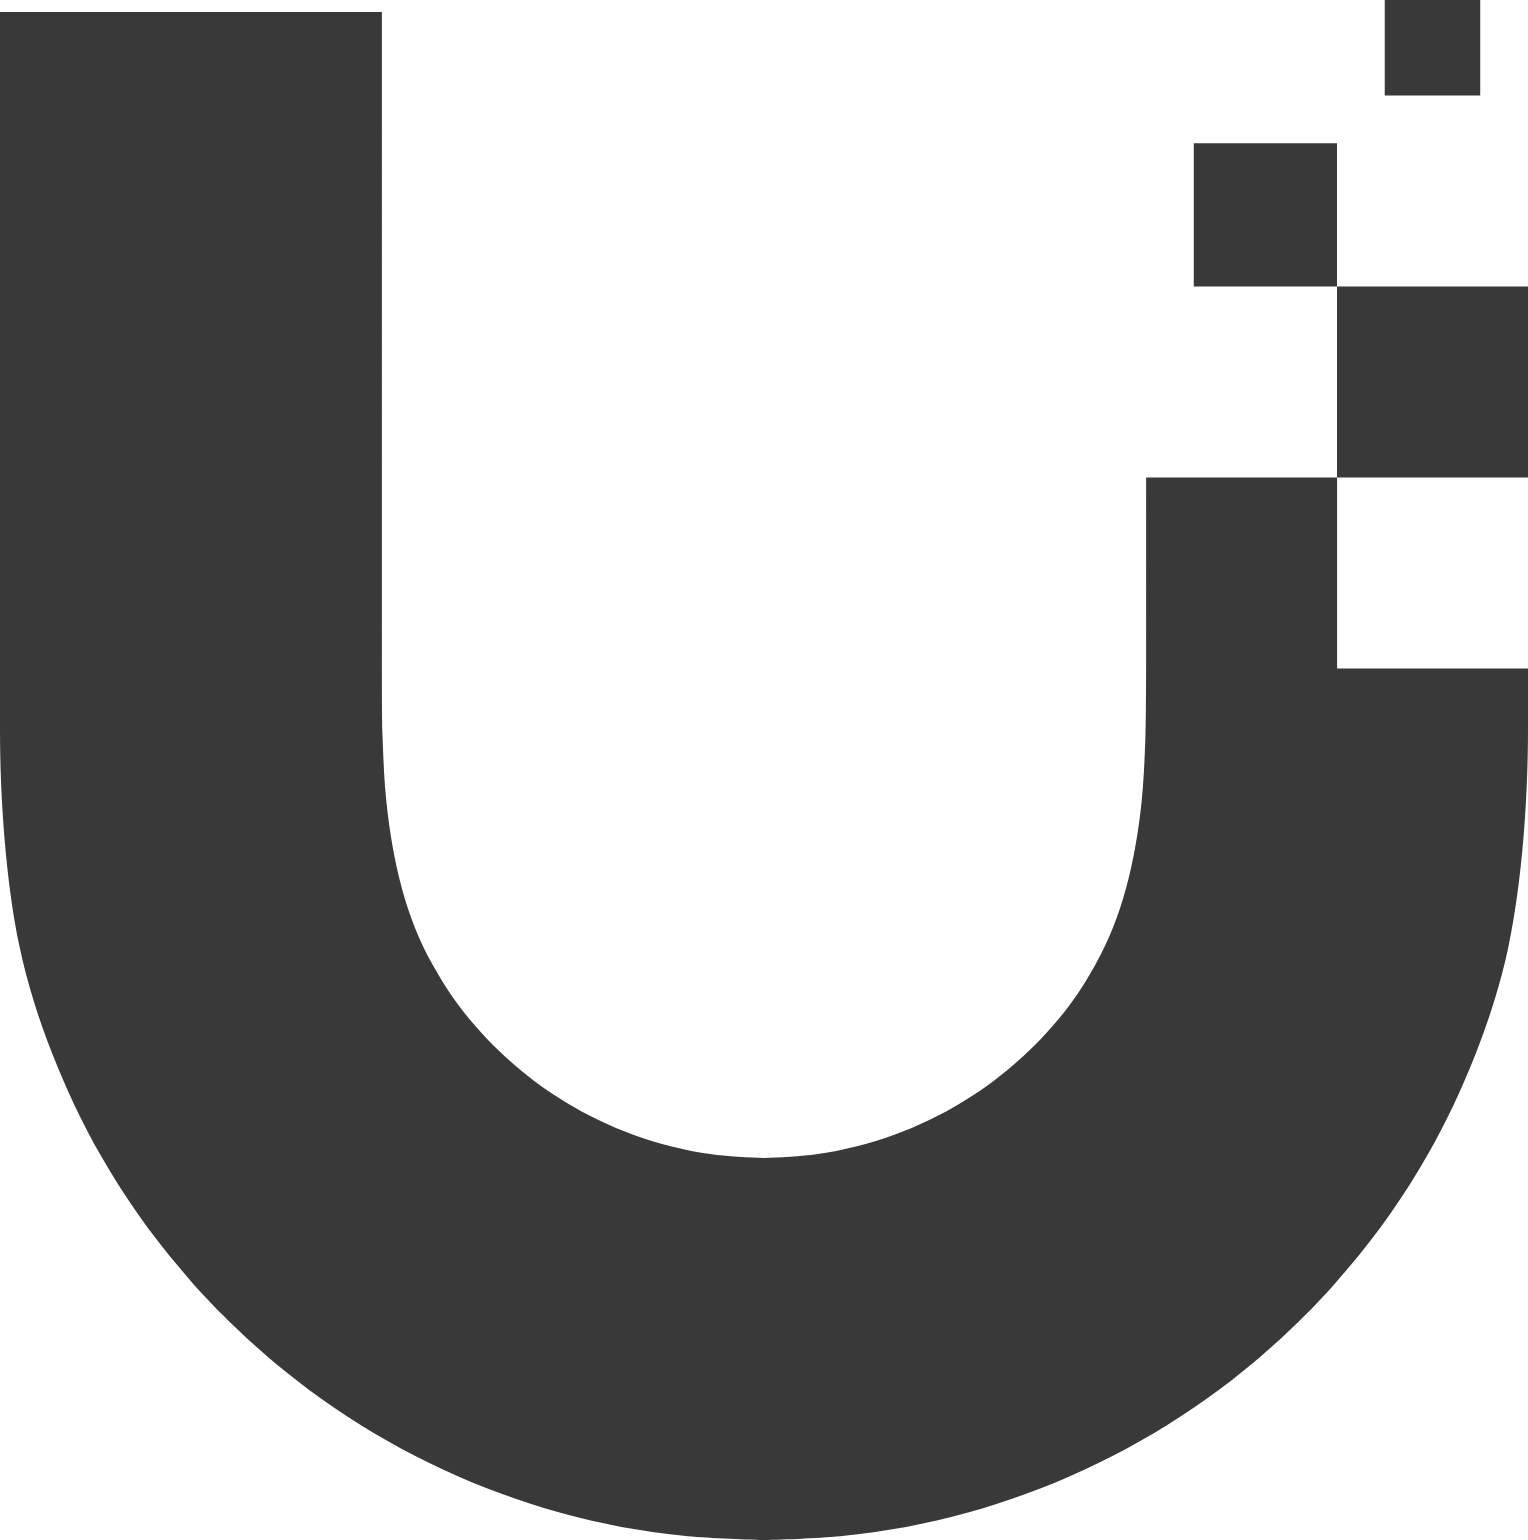 Unify Logo Download - AI - All Vector Logo